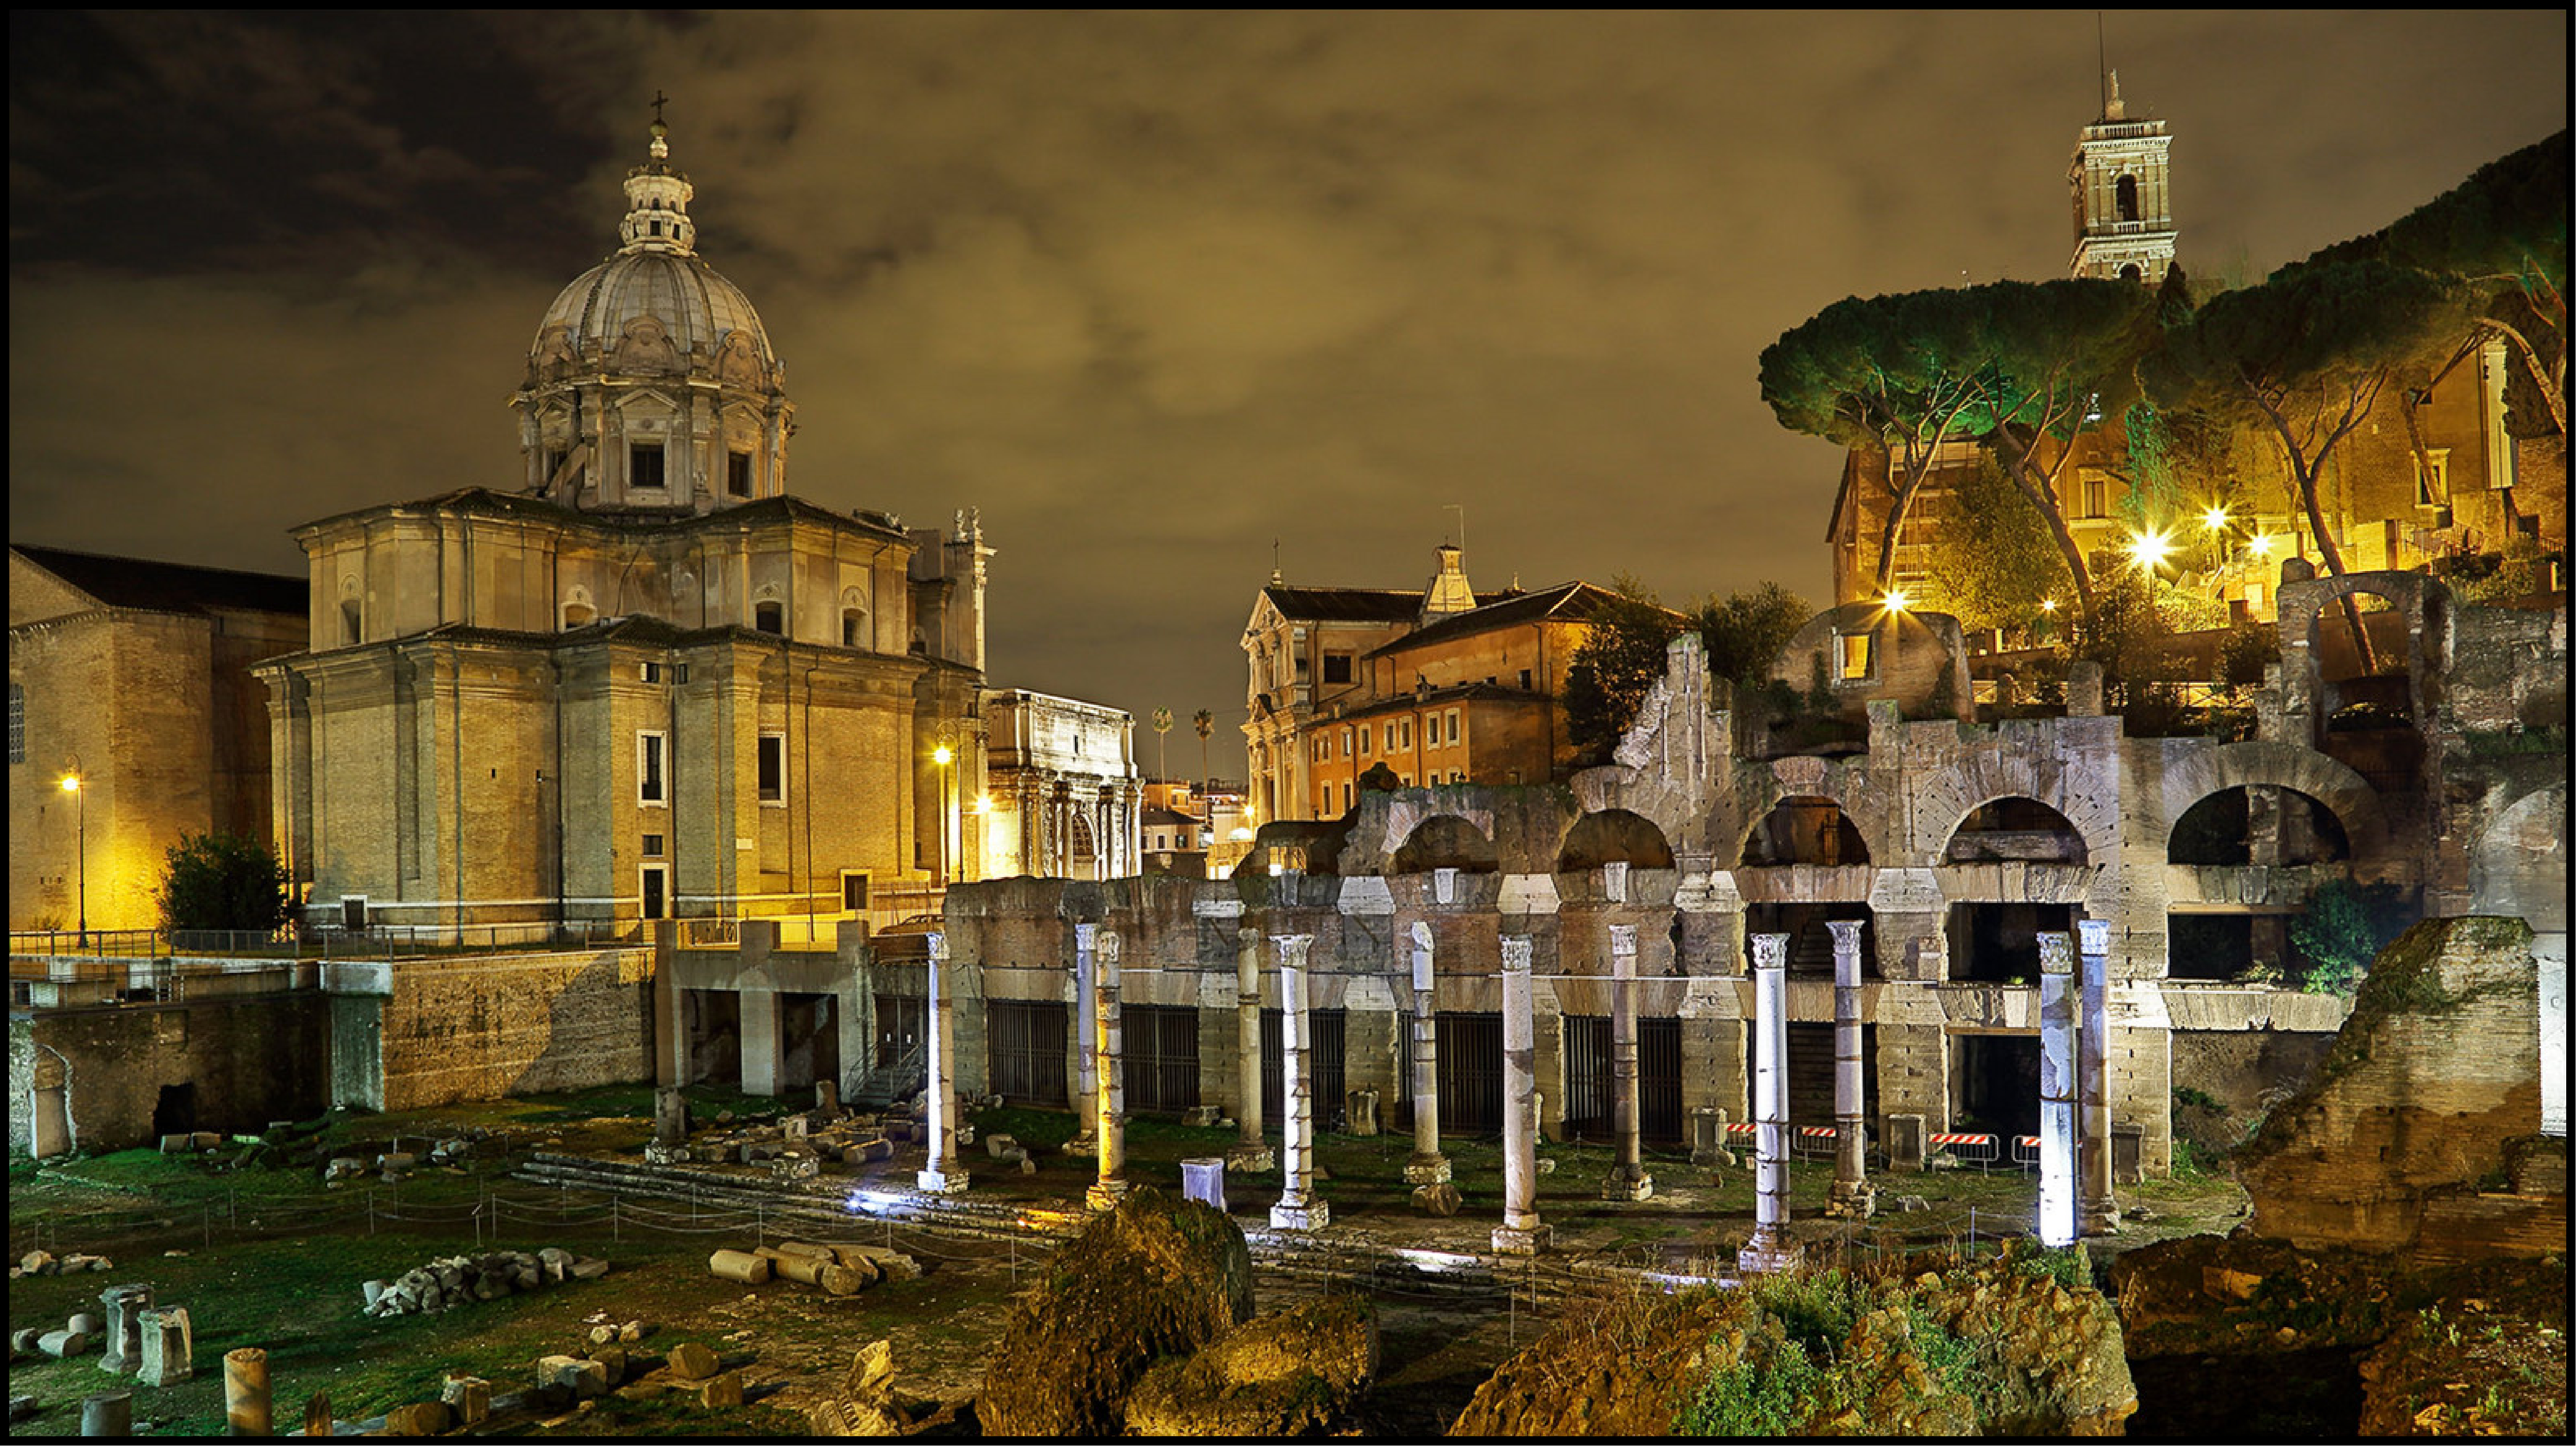 Roma nascosta: le meravigliose suggestioni dal Palatino